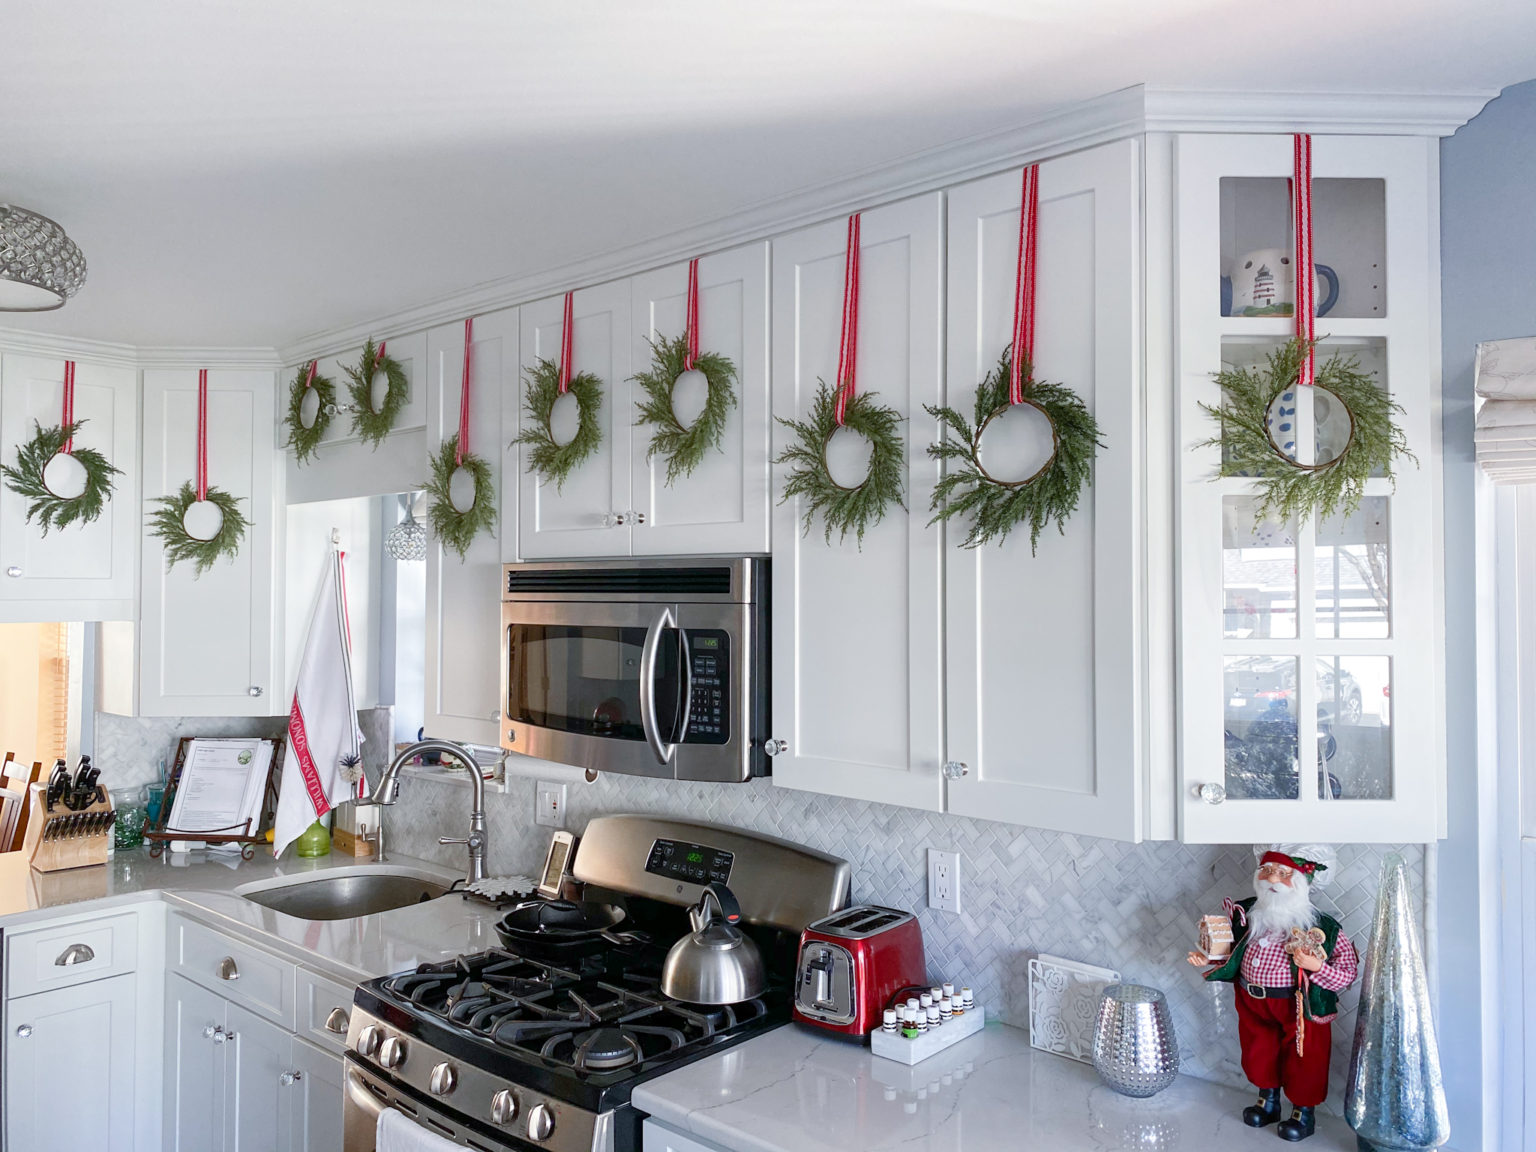 kitchen wall wreaths